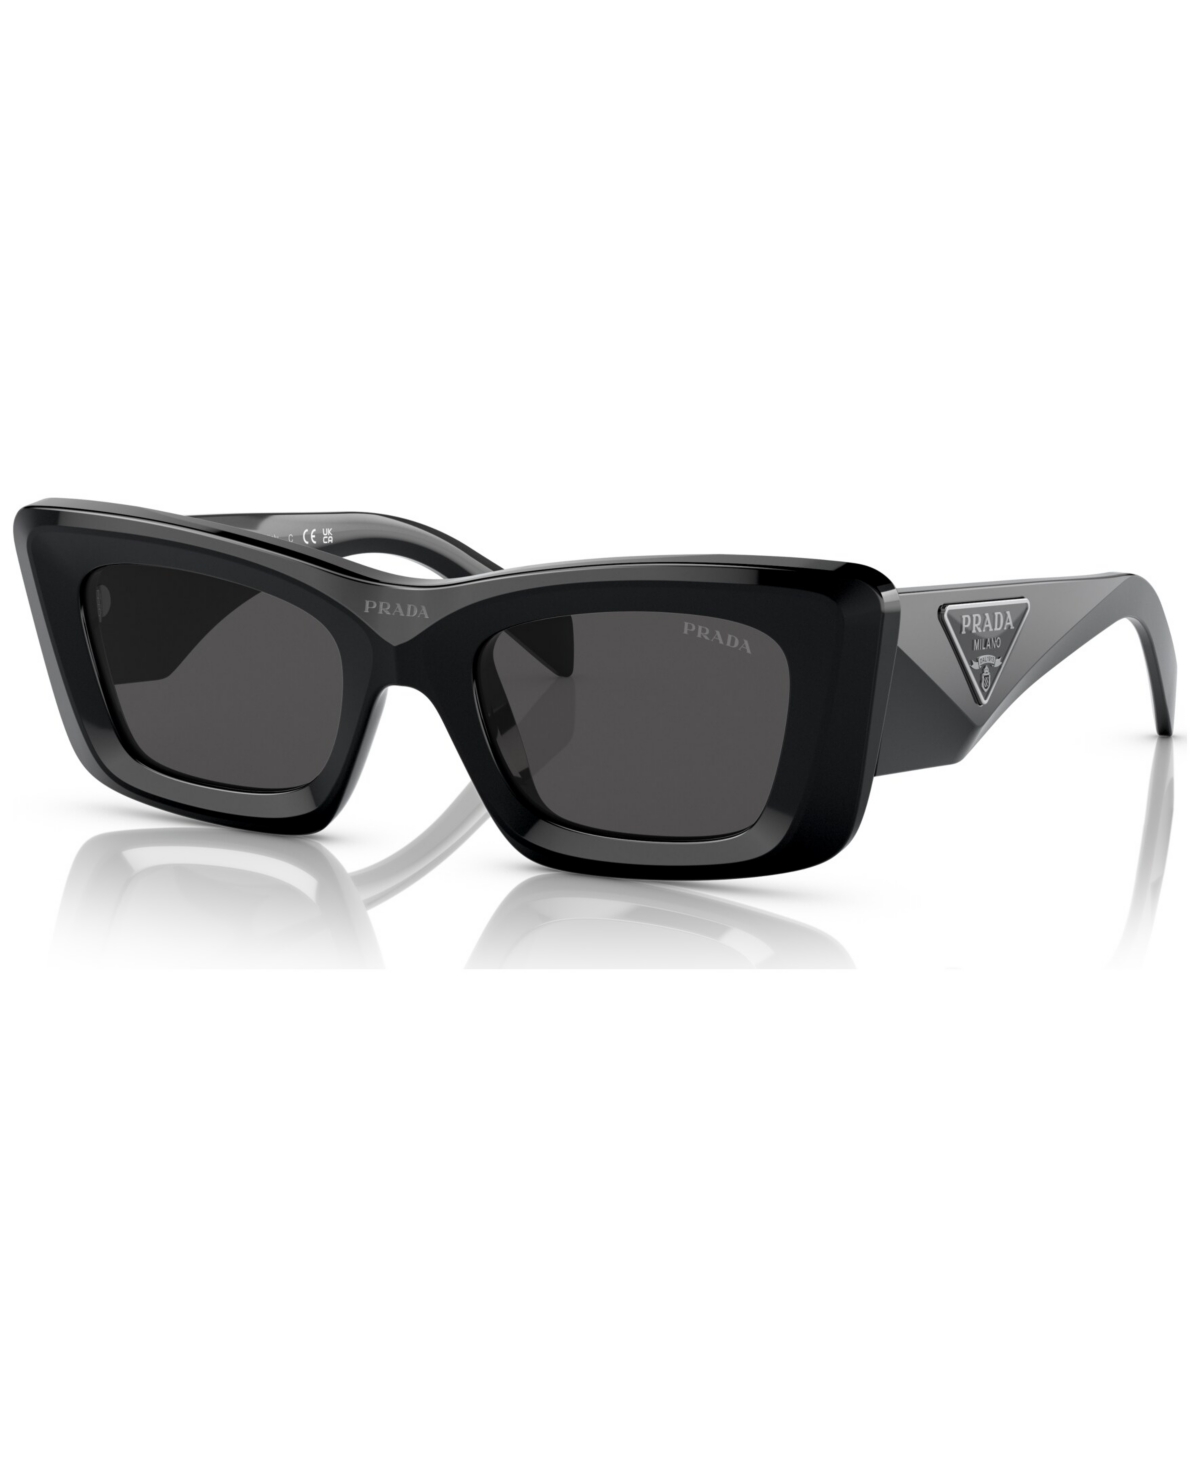 Prada Sunglasses UPC & Barcode | upcitemdb.com